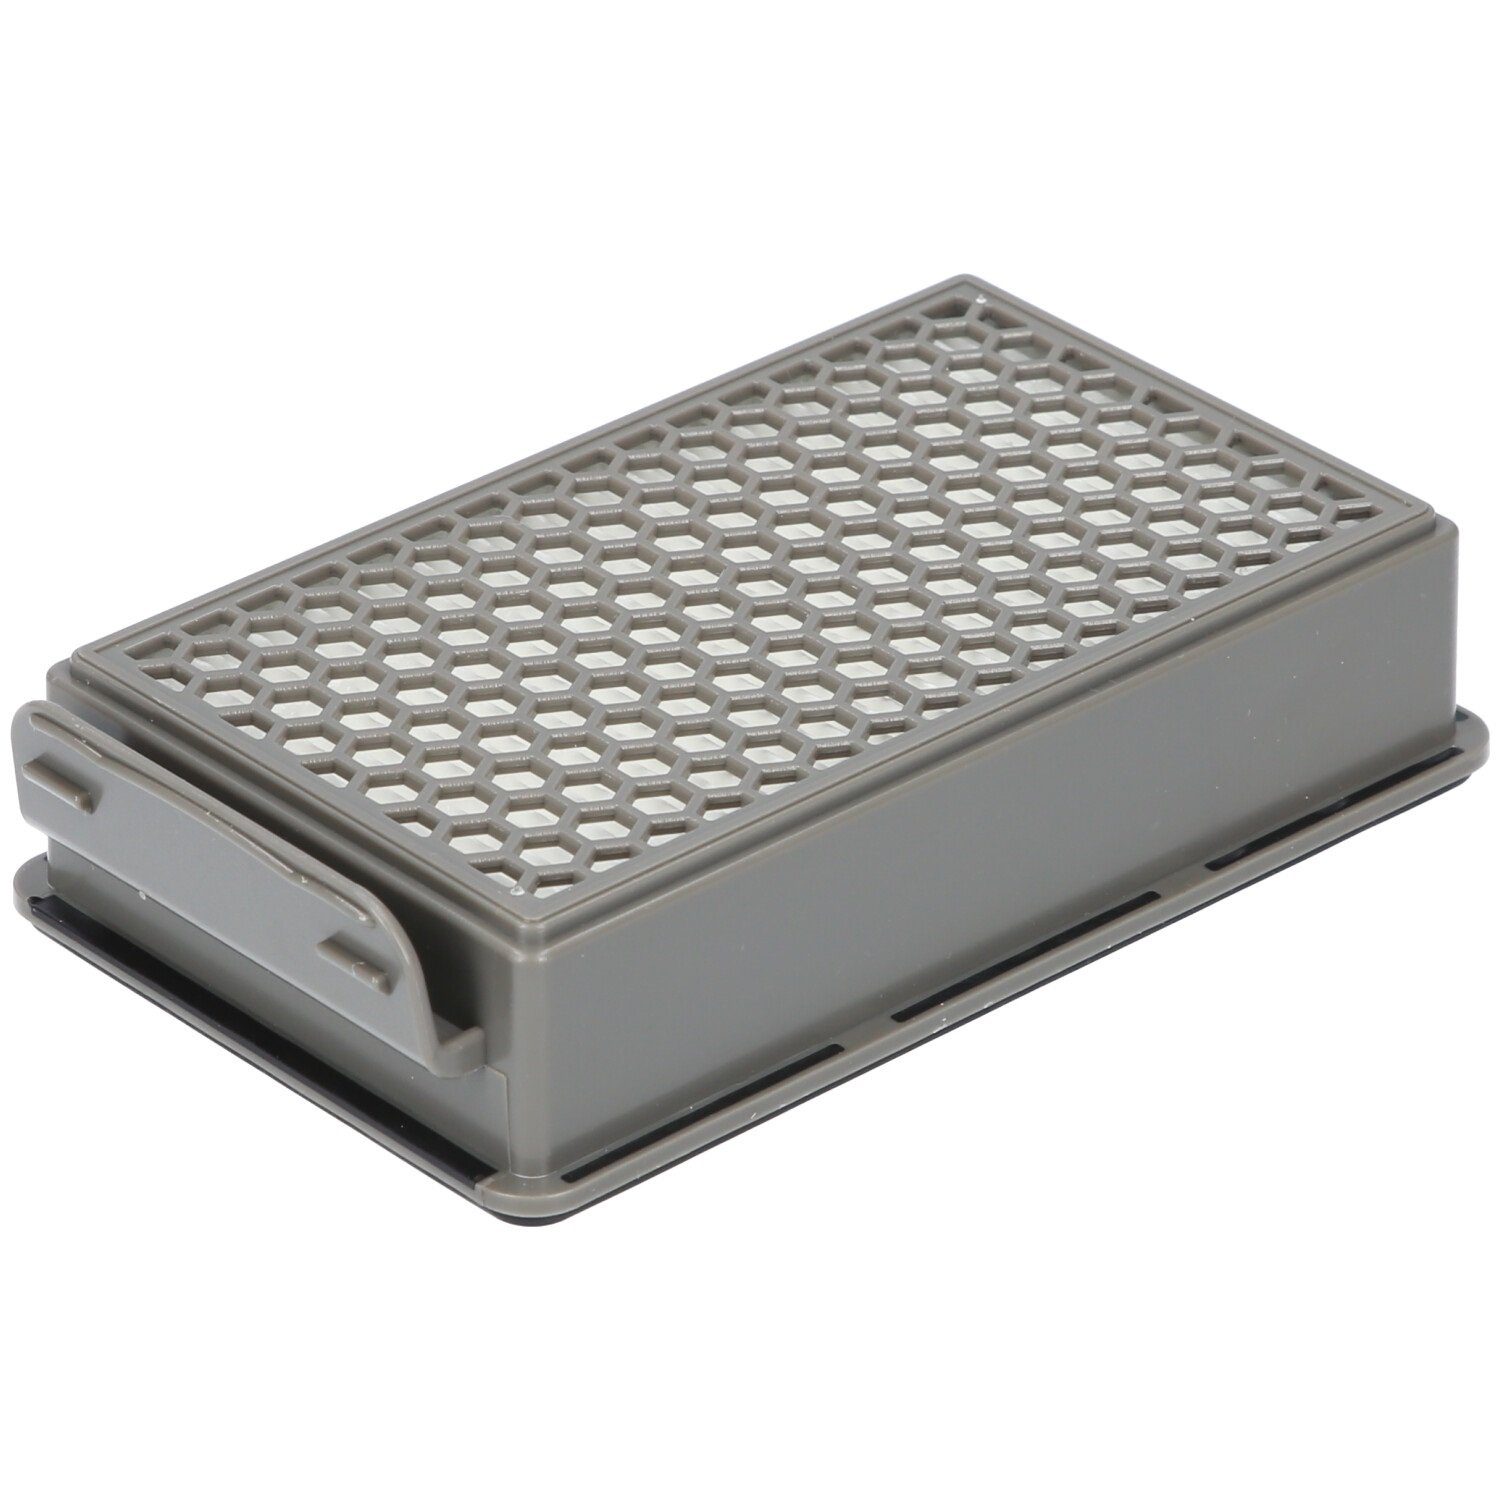 McFilter Filter-Set geeignet für Rundfilter, TW3969EA, TW3985EA,TW3999EA, TW3953EA, Alternative Filterkassette, für ZR005901 2x Tefal 2x TW3931EA